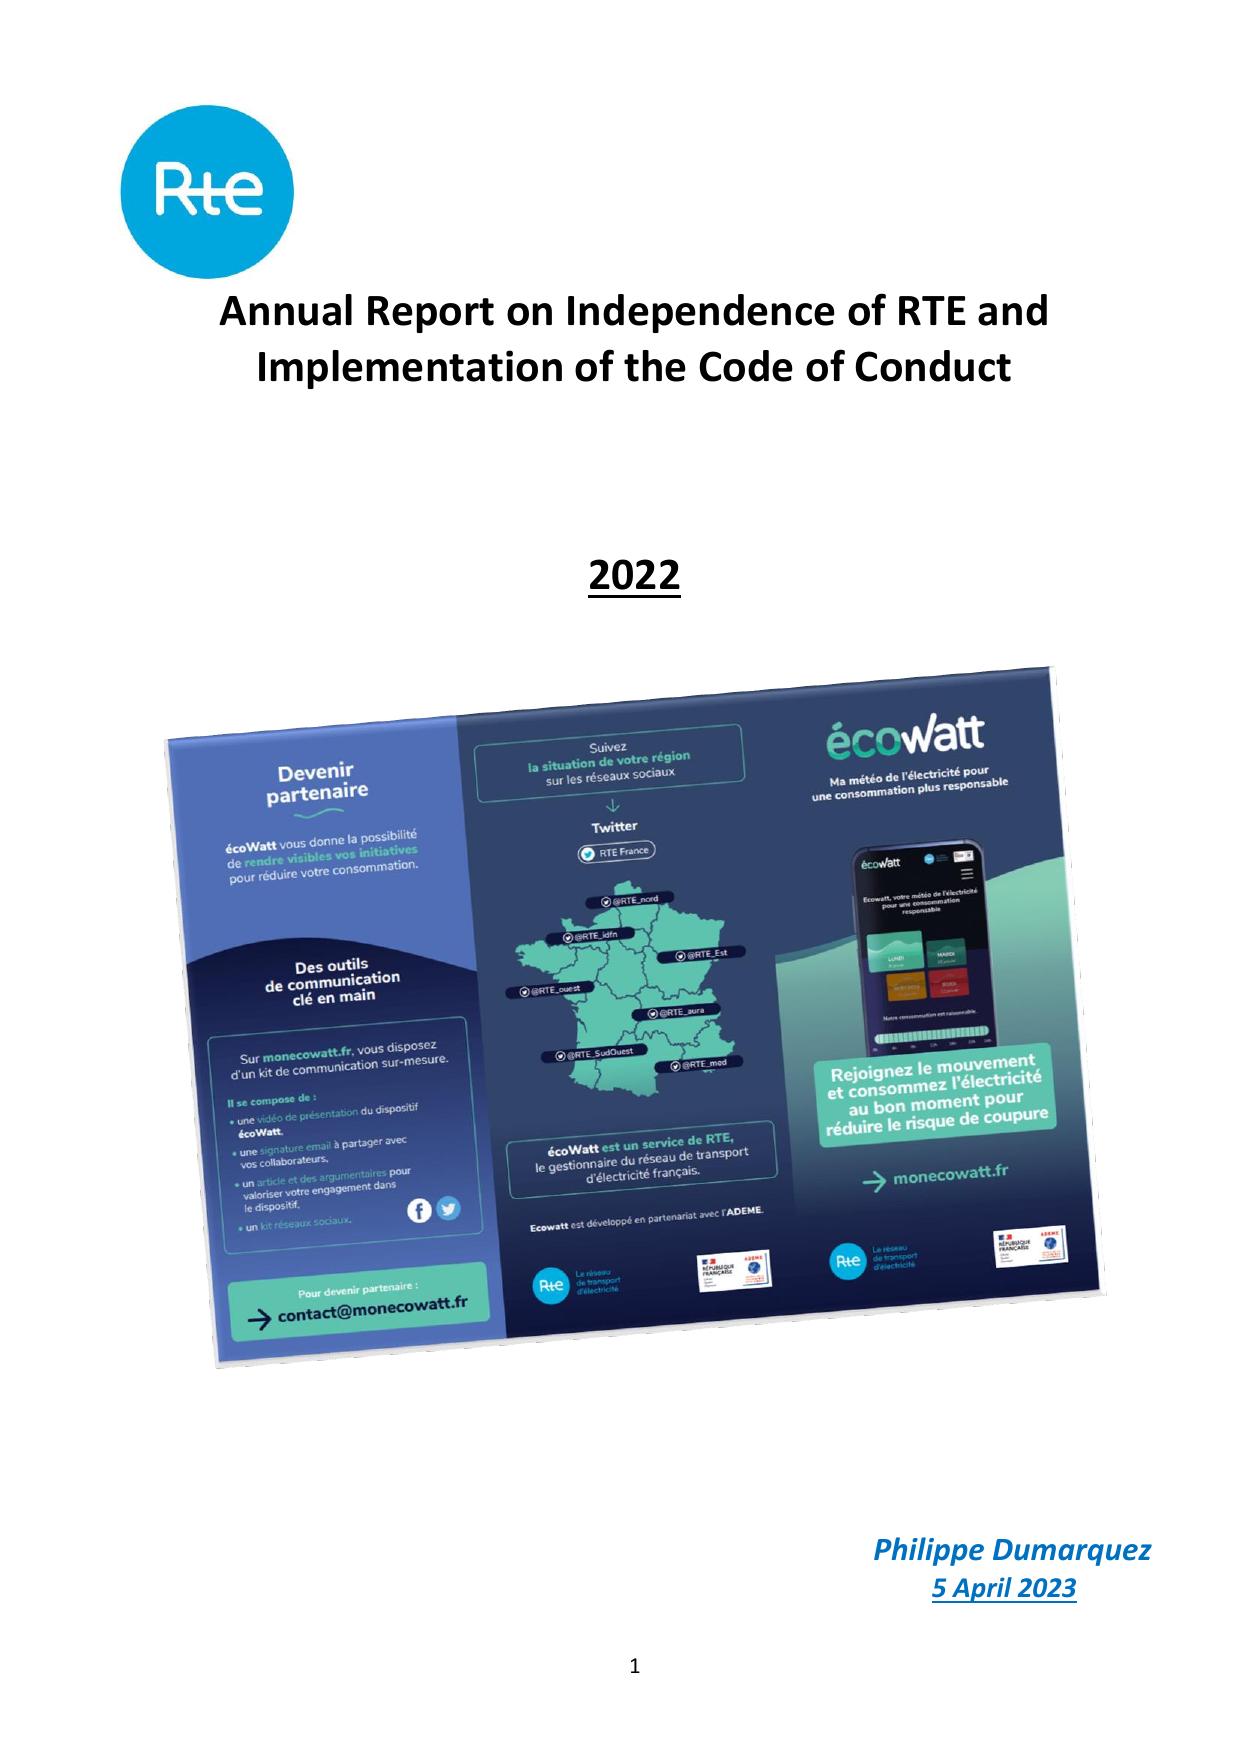 SERVICES-RTE 2022 Annual Report